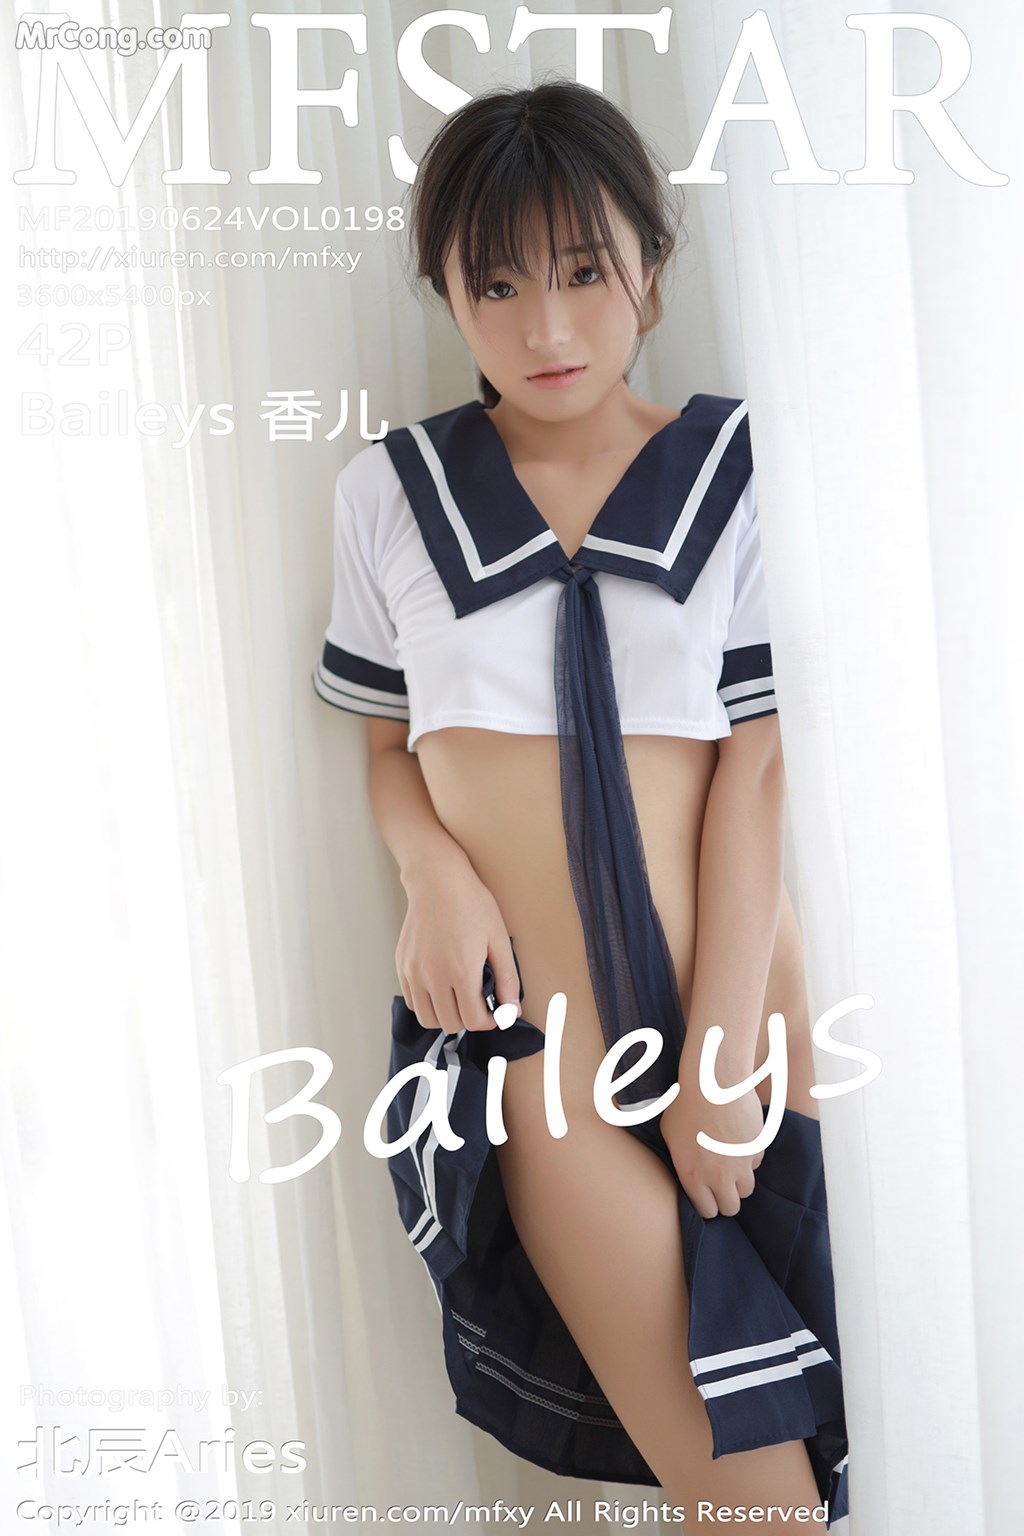 MFStar Vol.198: Baileys 香 儿 (43 pictures)